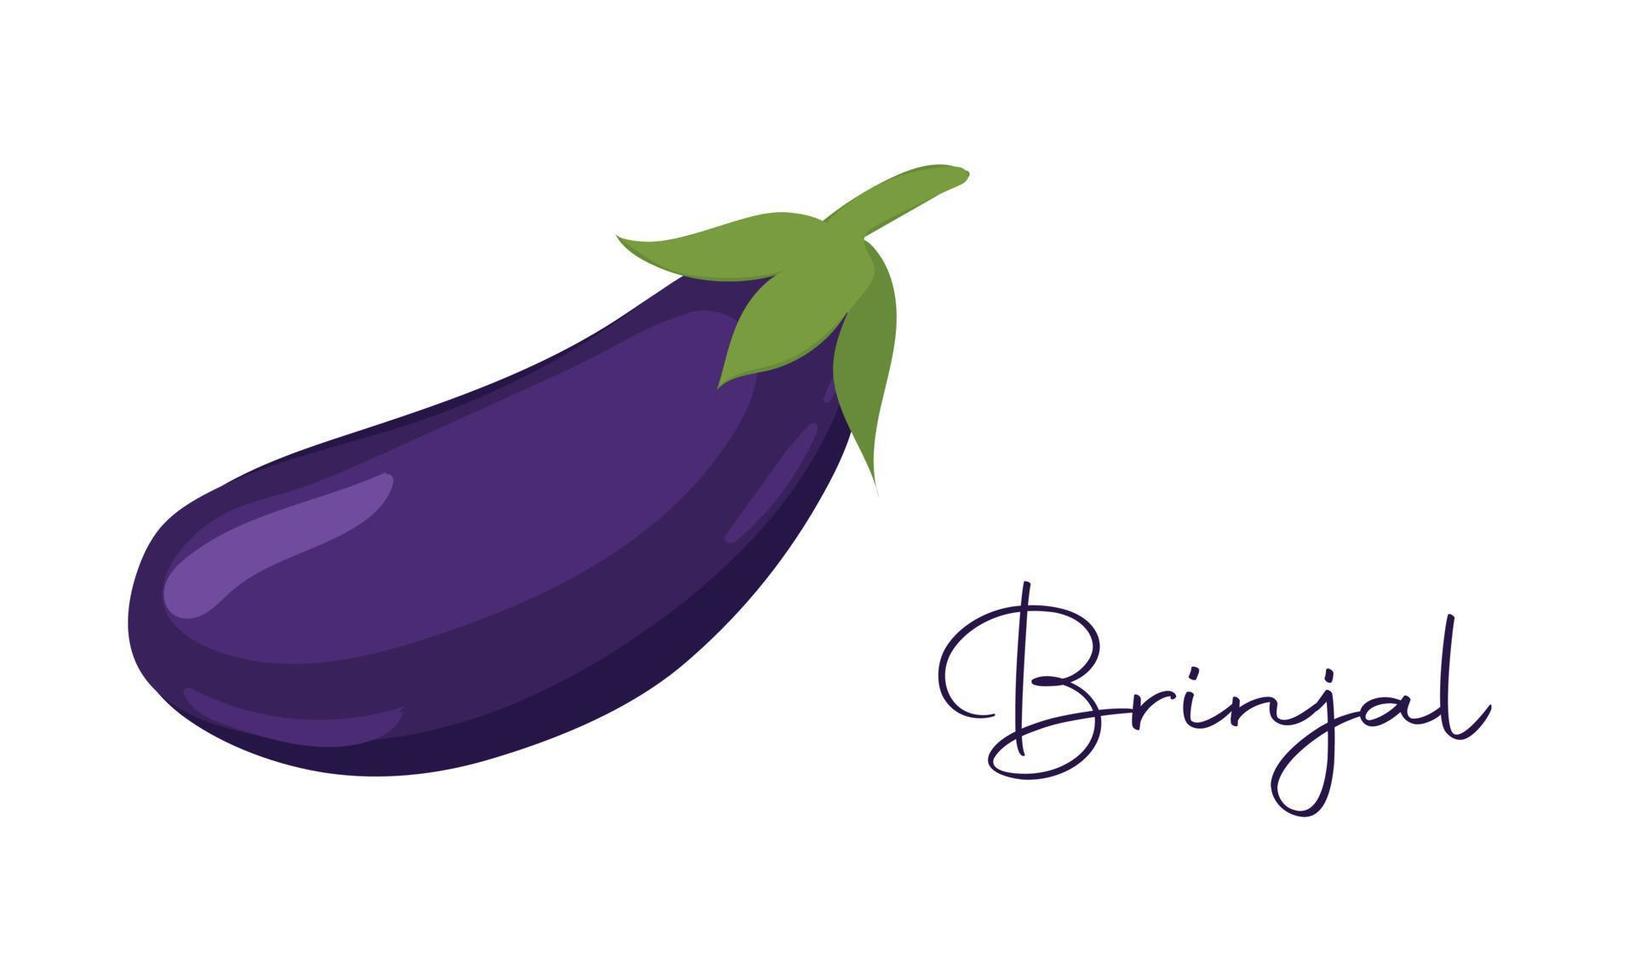 äggplanta, aubergine eller brinjal vegetabiliska vektor ikon i linje stil design för hemsida design, app, ui, isolerat på vit bakgrund.